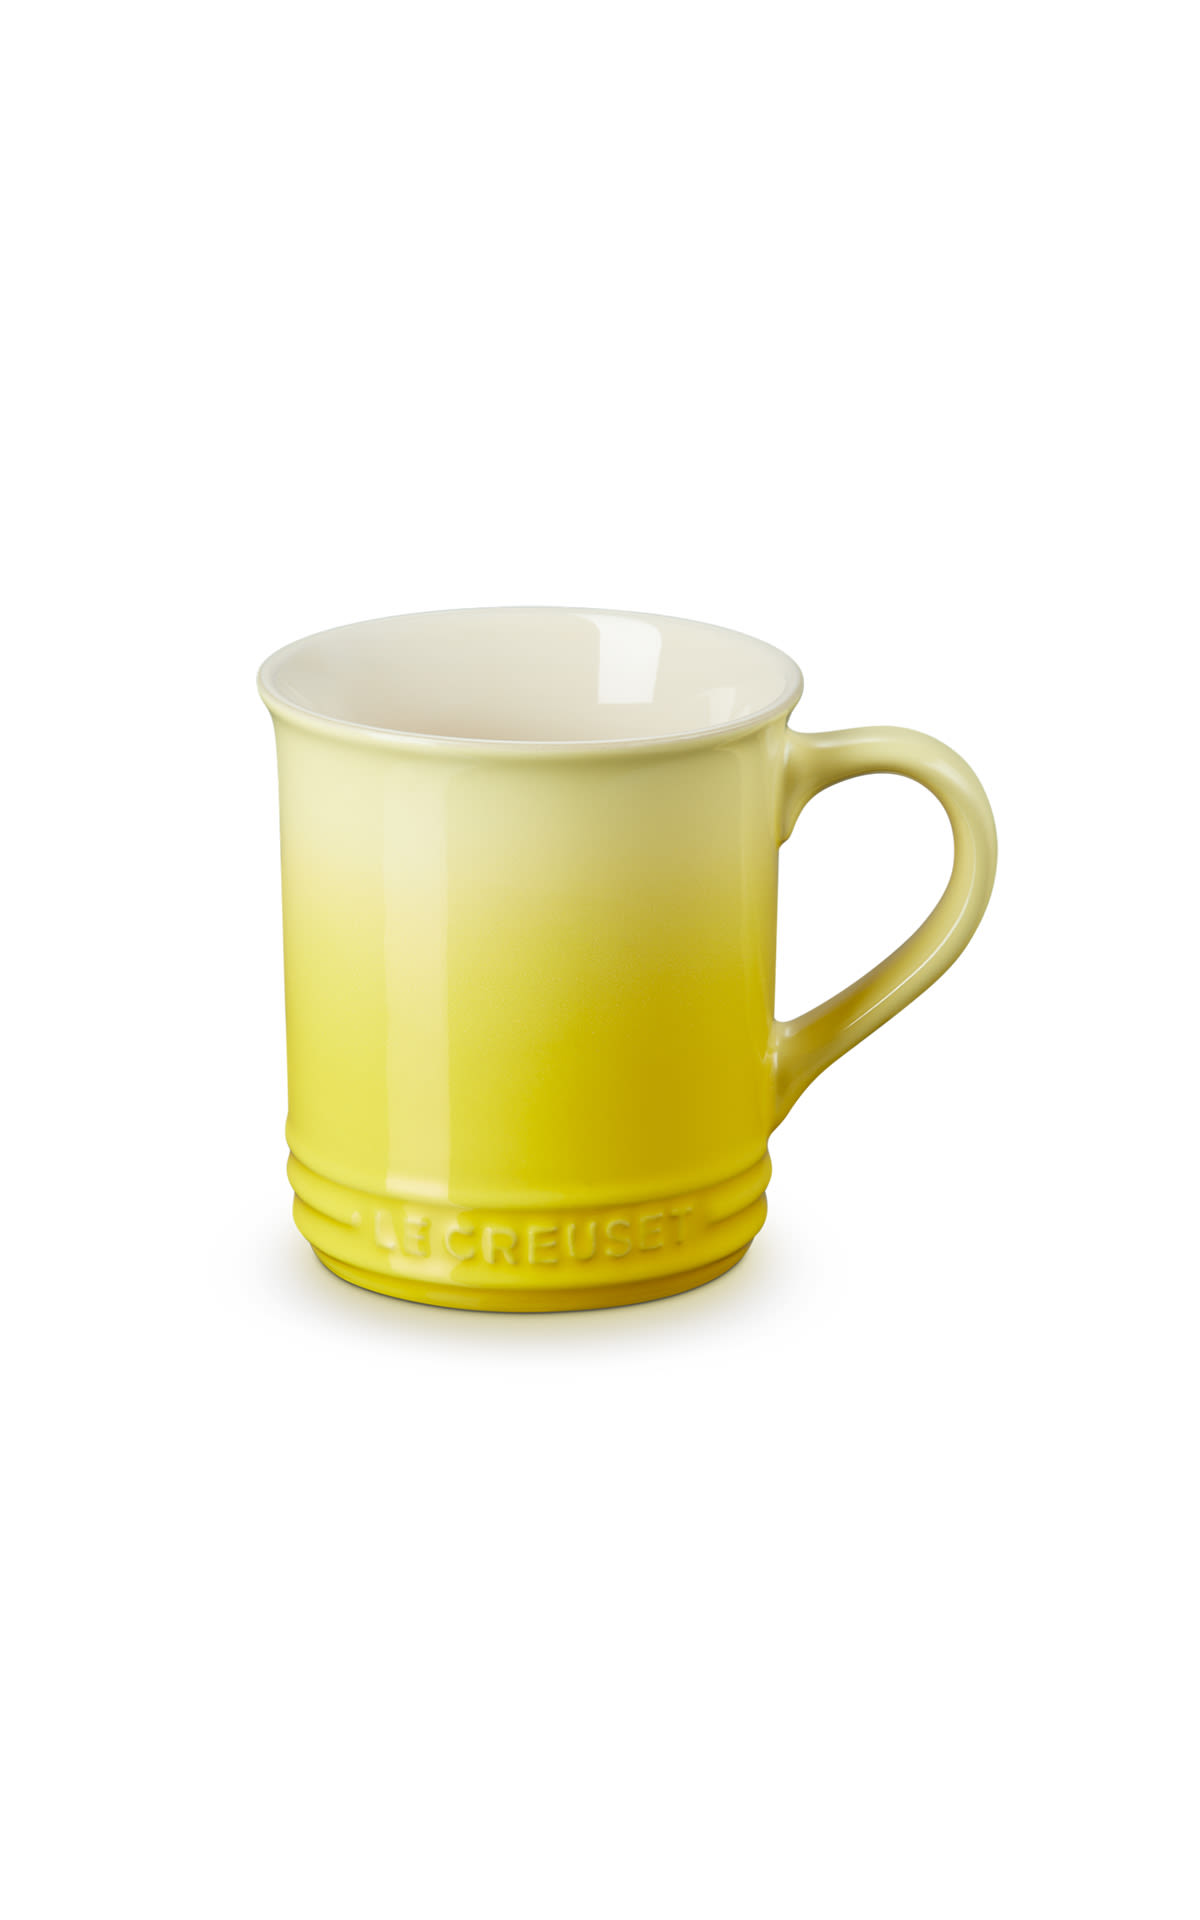 Yellow London mug Le Creuset